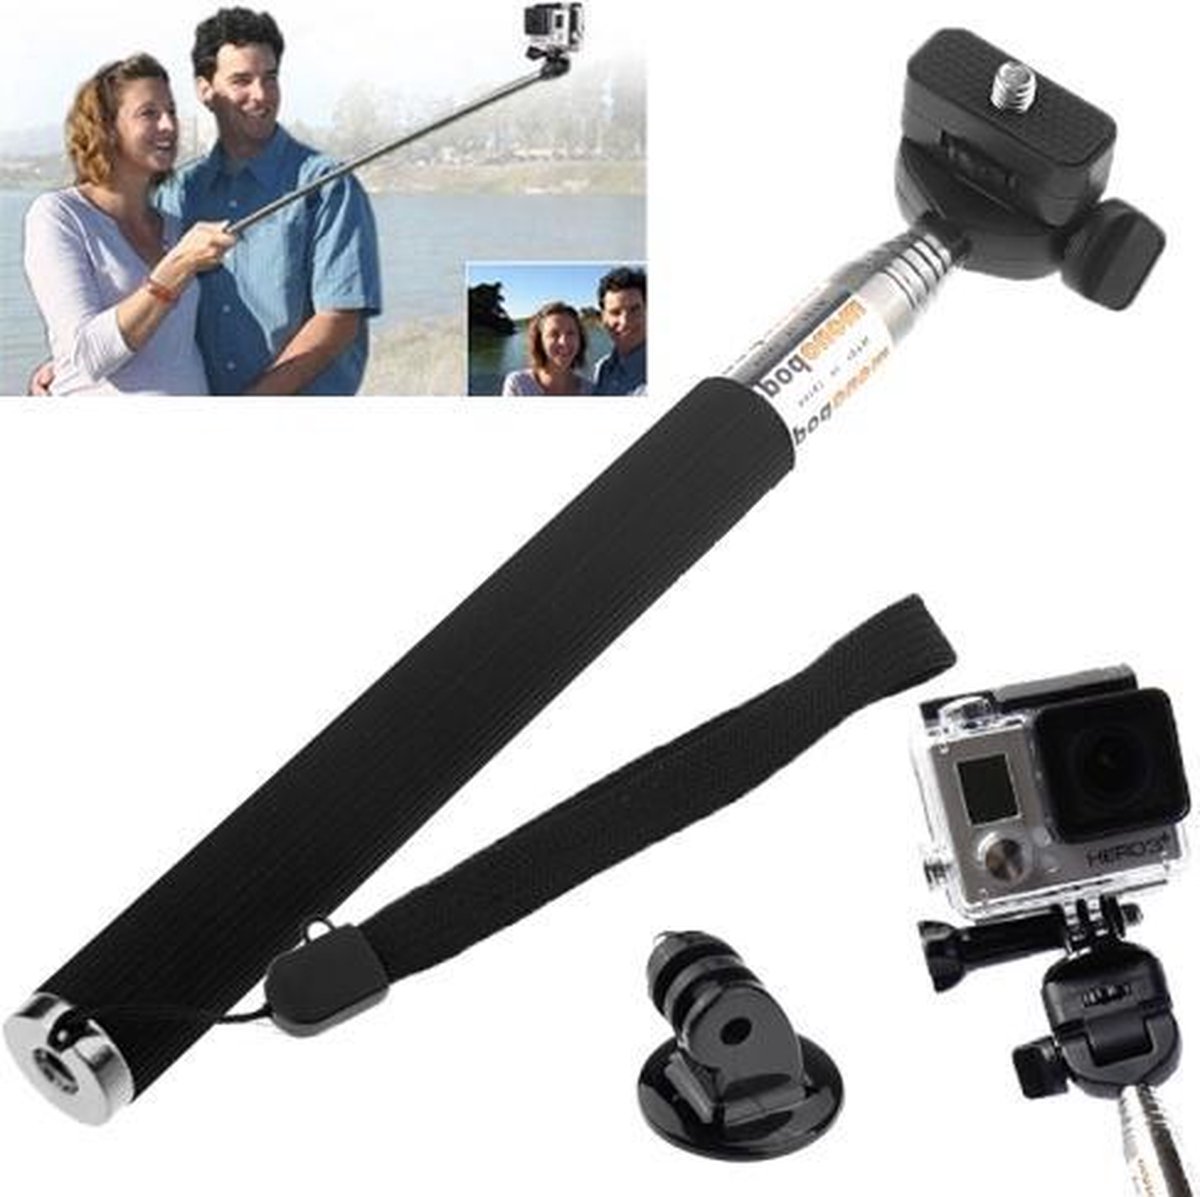 Proqam Selfie stick met GoPro adapter voor GoPro Hero 4/3/2/1 en SJCAM SJ4000/SJ5000/M10 en andere action cams (selfie stok monopod)